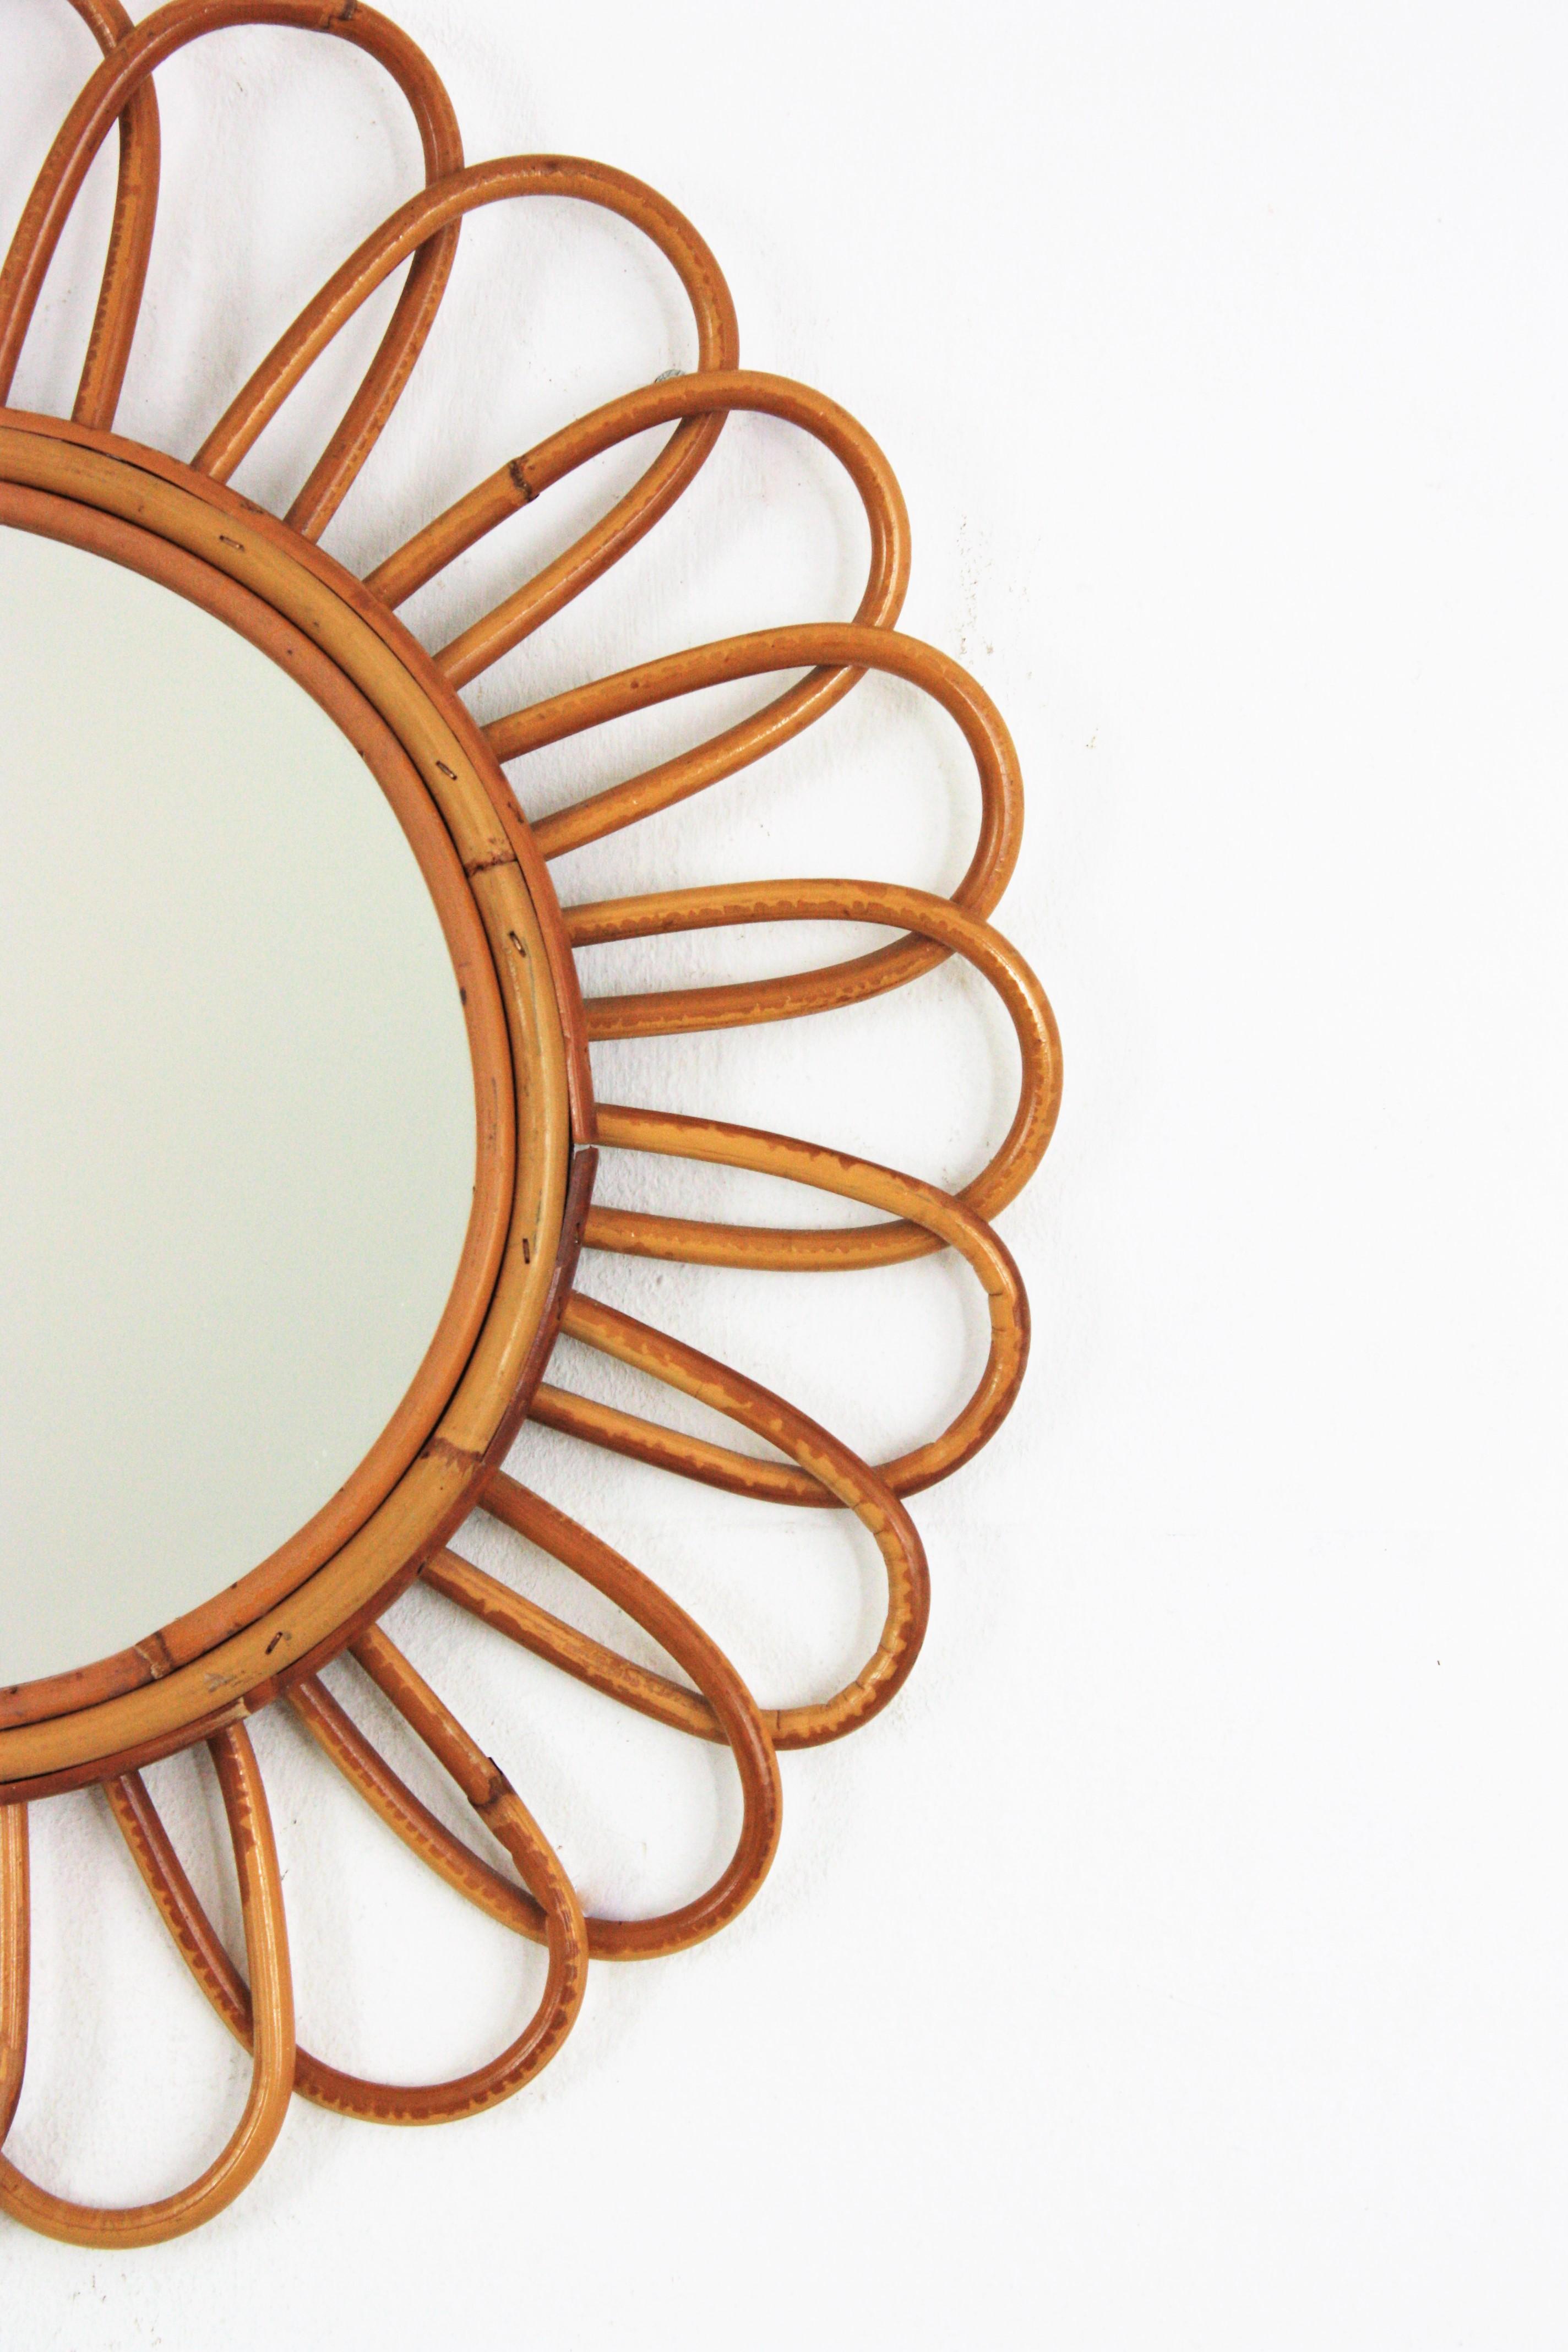 Hand-Crafted Rattan Flower Burst Mirror, Midcentury Mediterranean Design, 1960s For Sale